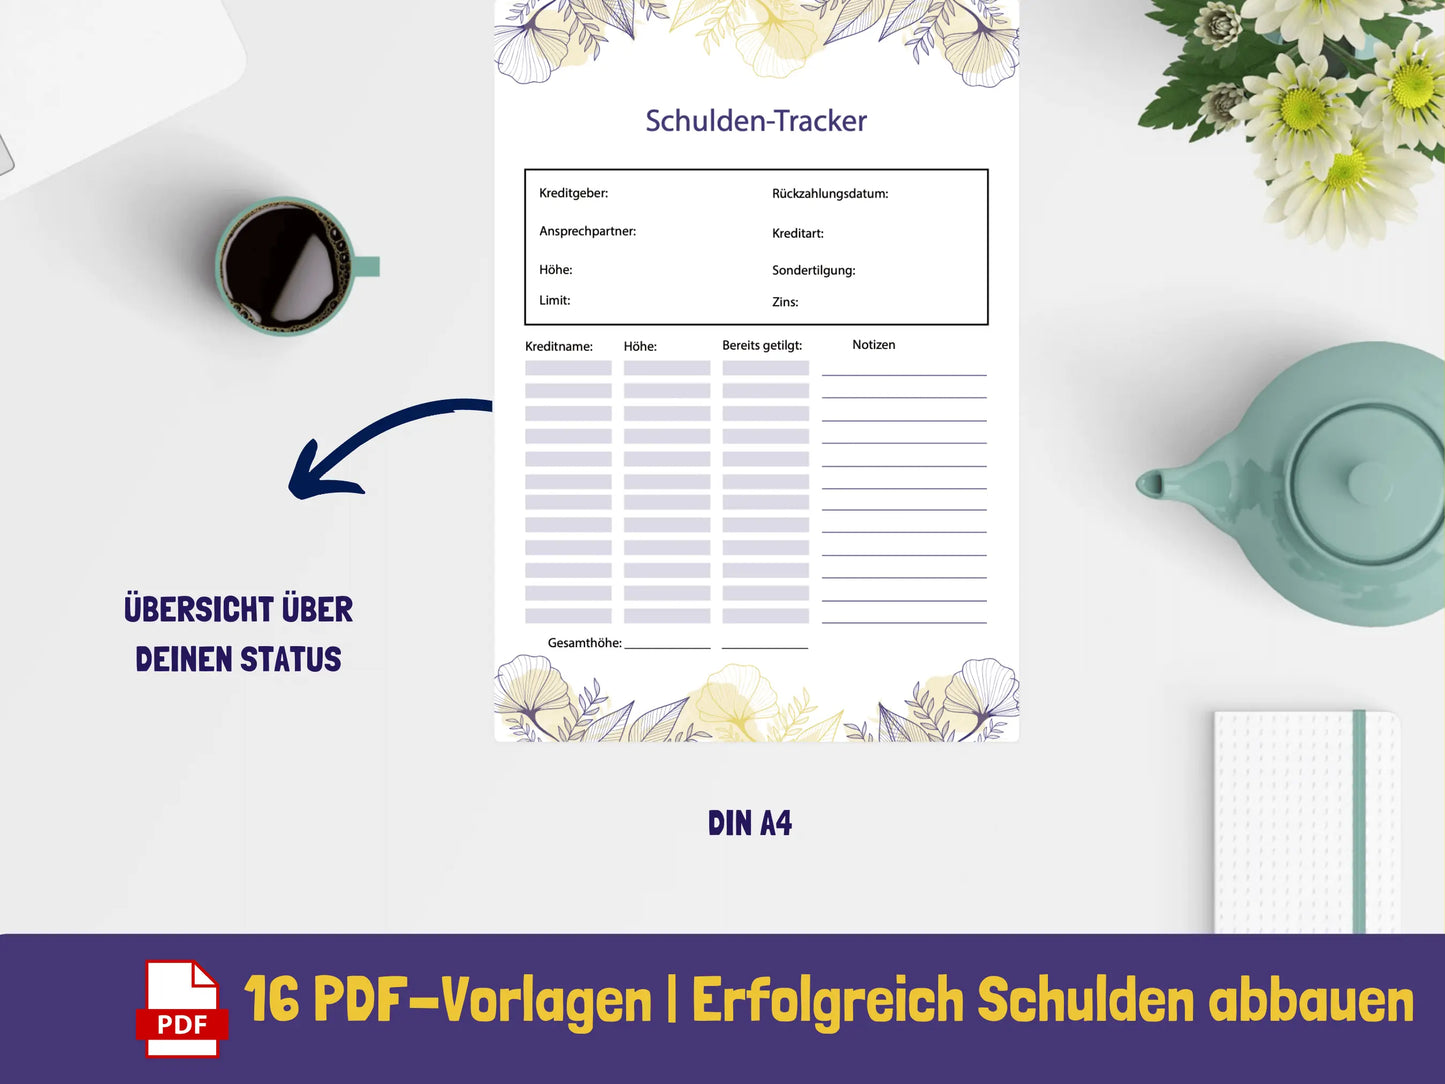 Schuldenabbau Vorlagen {15 Seiten} PDF AndreasJansen Vorlage